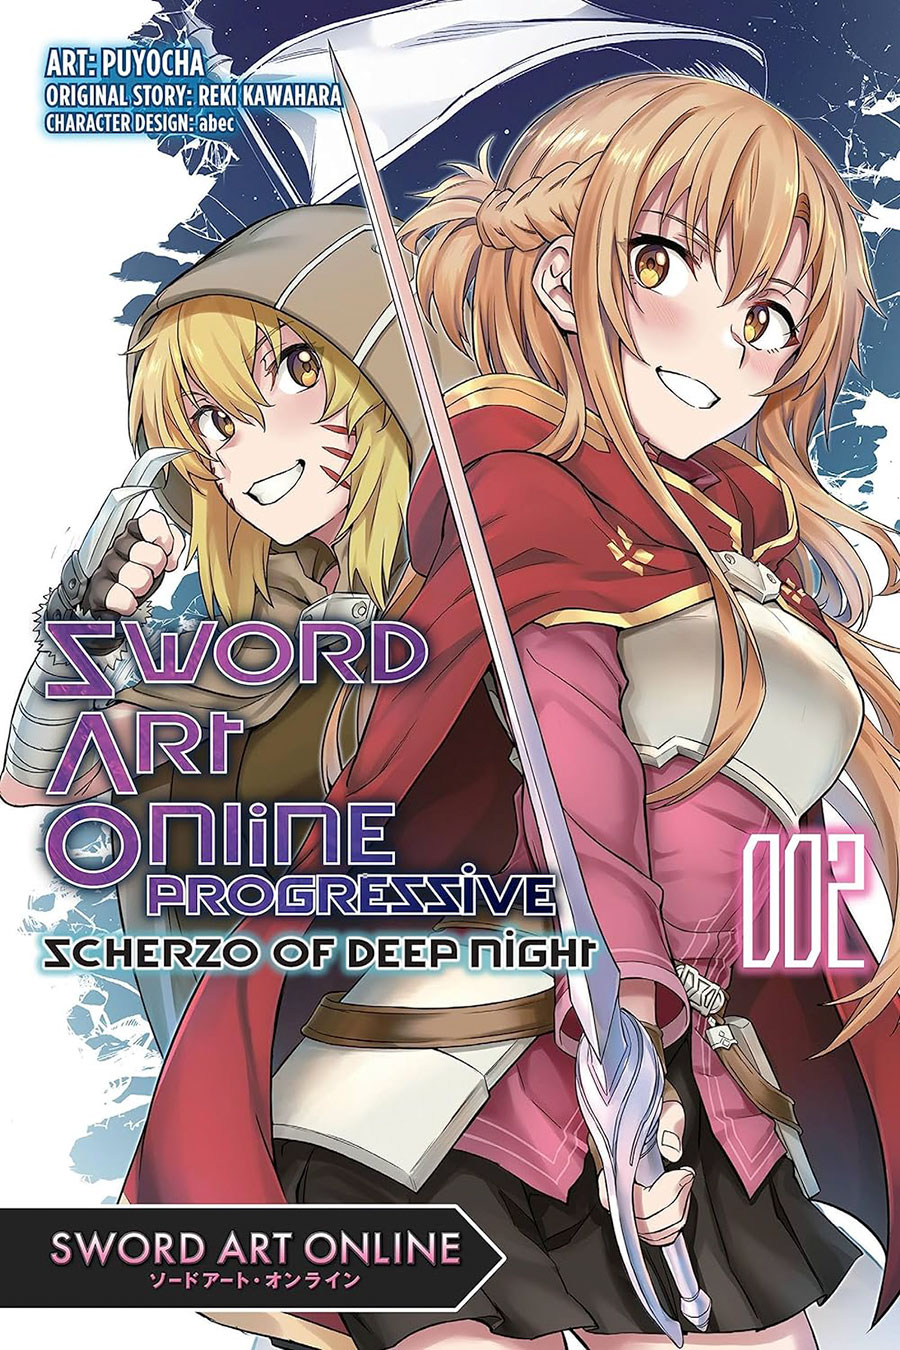 Sword Art Online Progressive Scherzo Of Deep Night Vol 2 GN